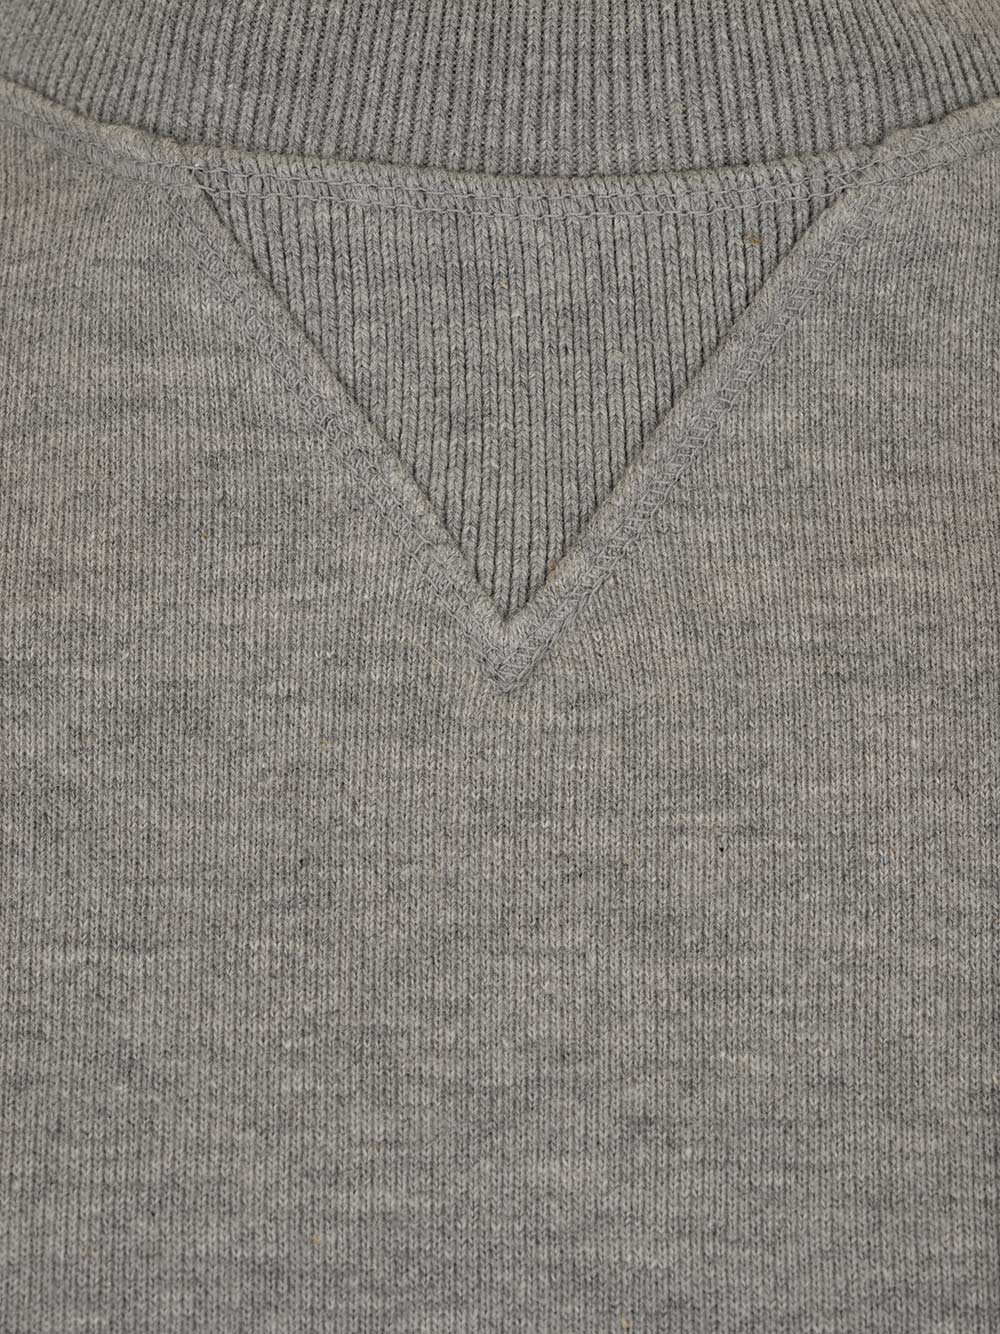 Shop Thom Browne Grey 4-bar Sweatshirt